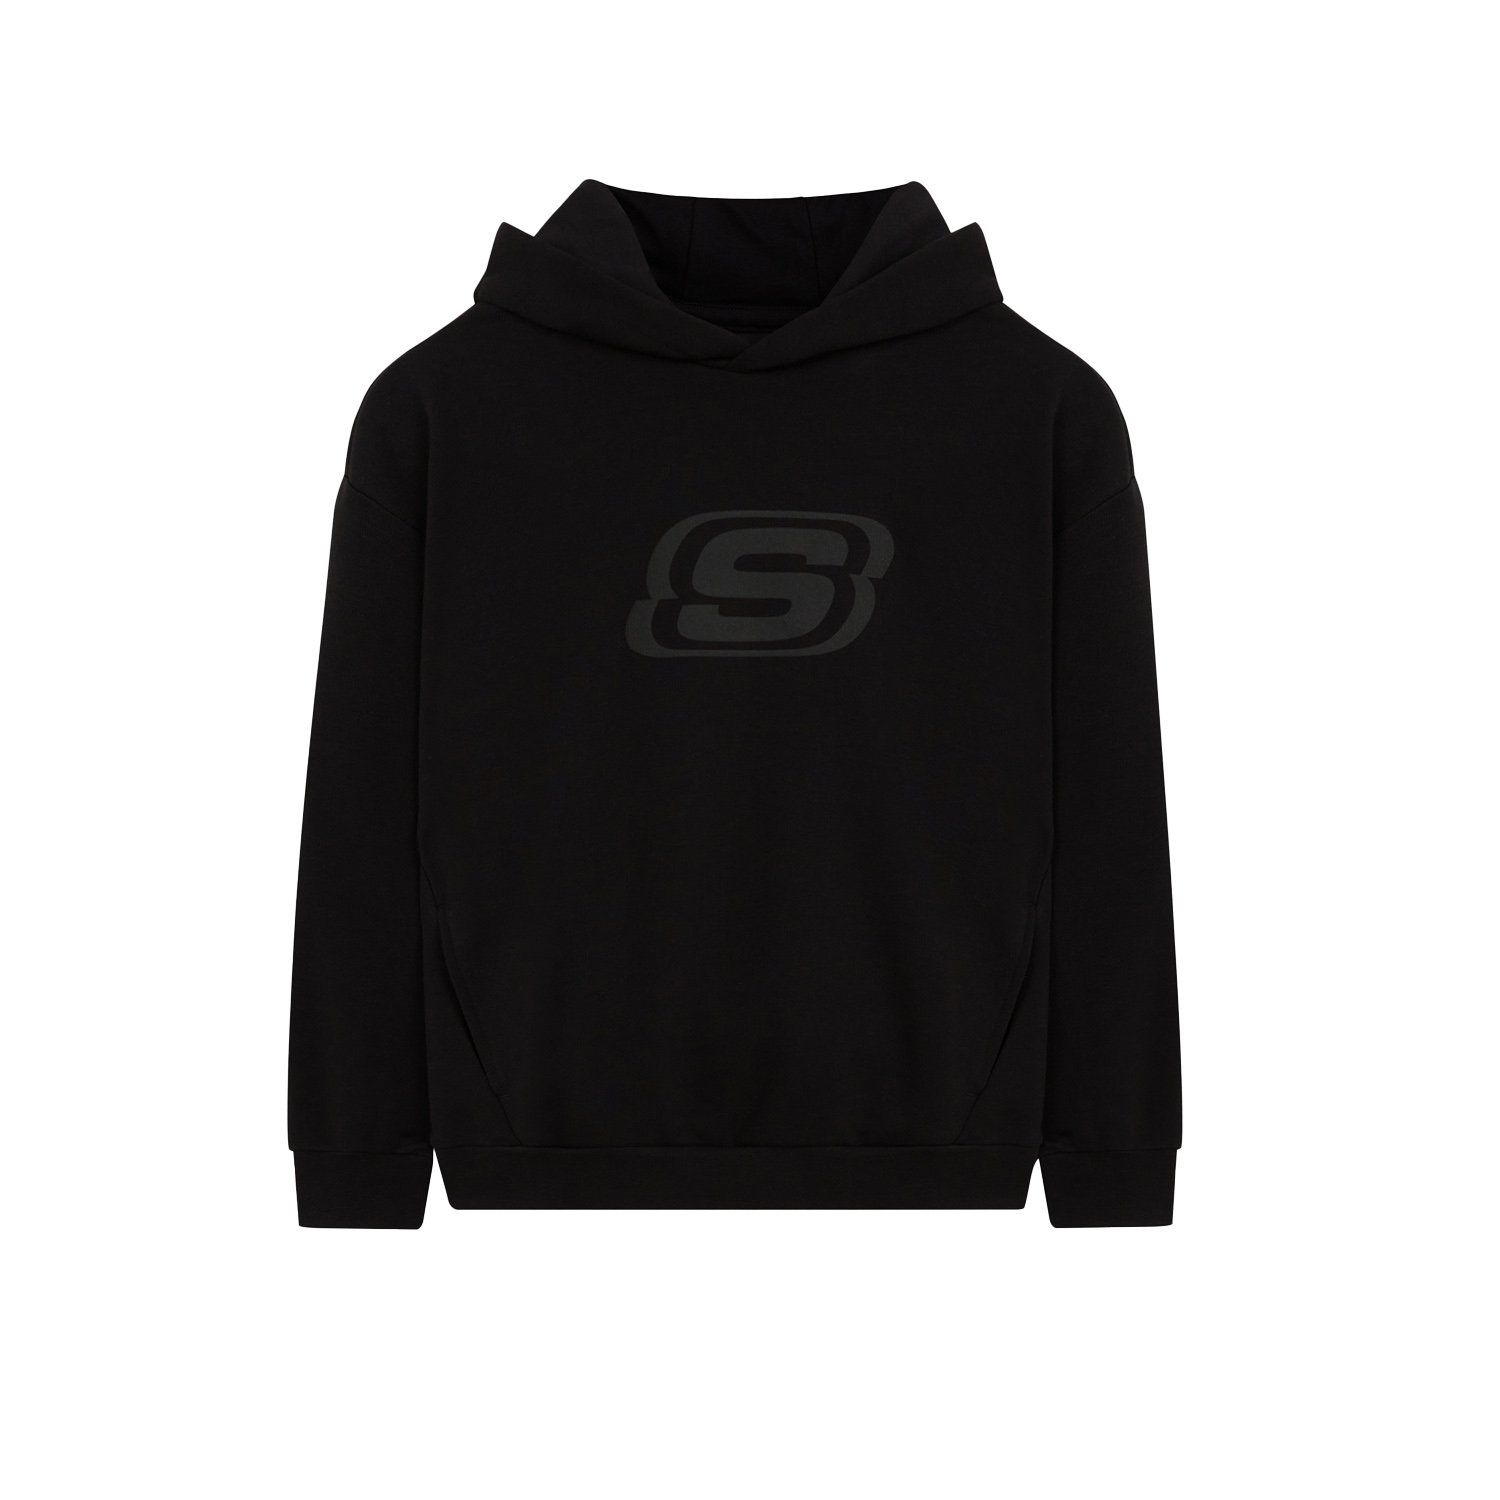 Skechers B LW Fleece Çocuk Sweatshirt - Siyah - 1